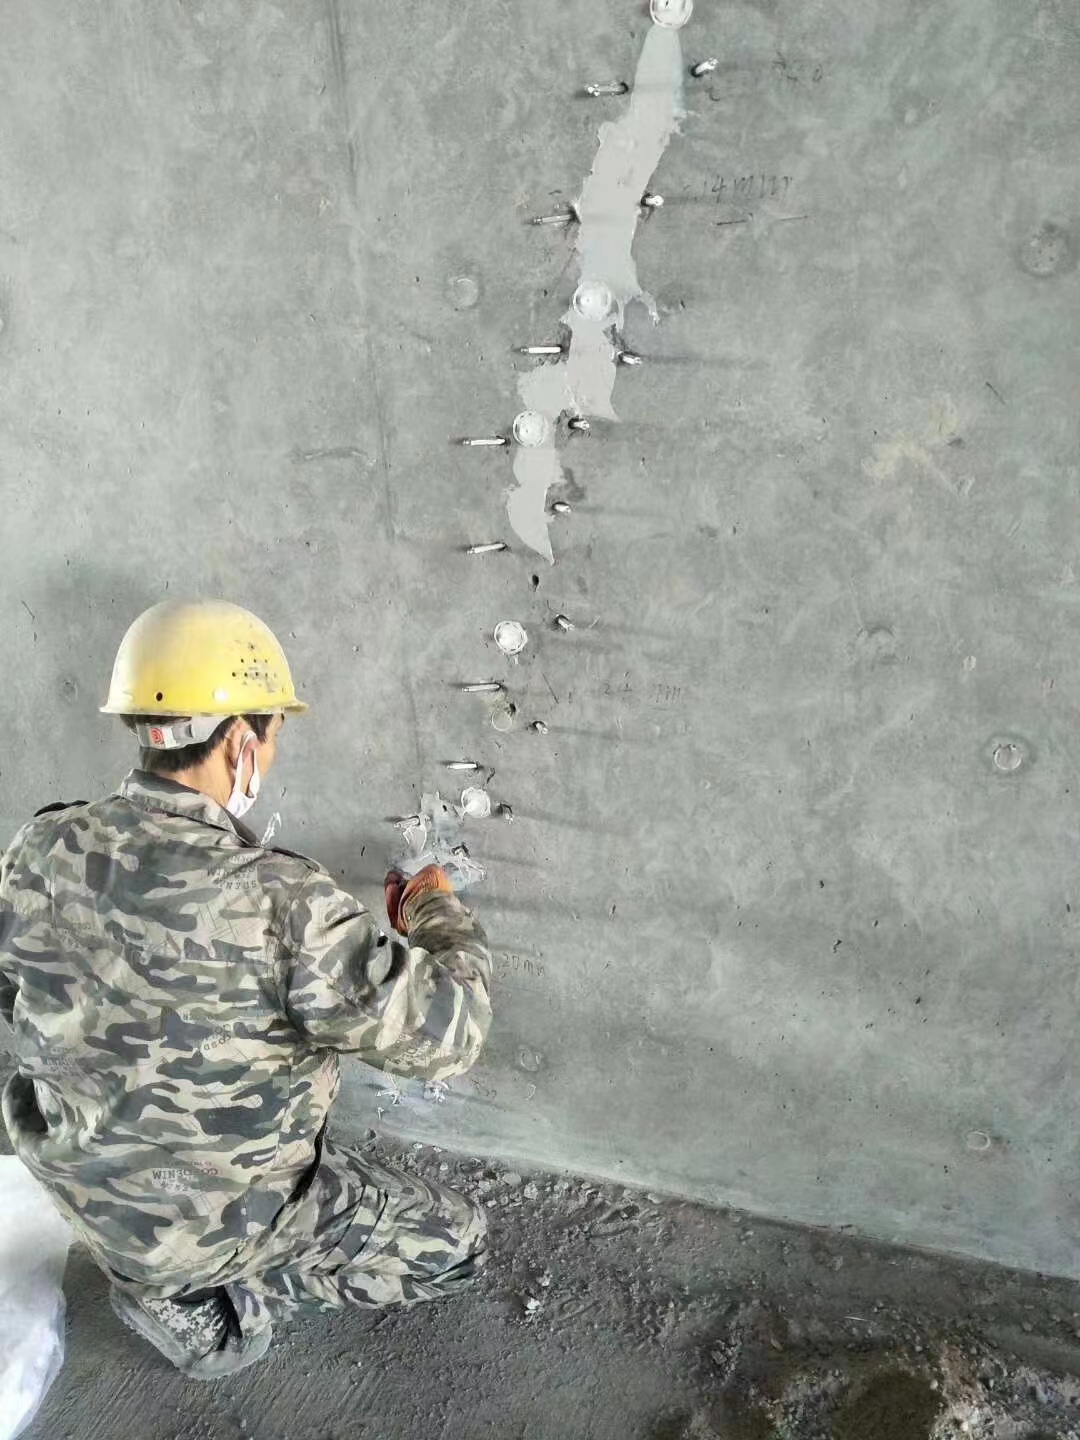 江苏混凝土楼板裂缝加固施工的方案